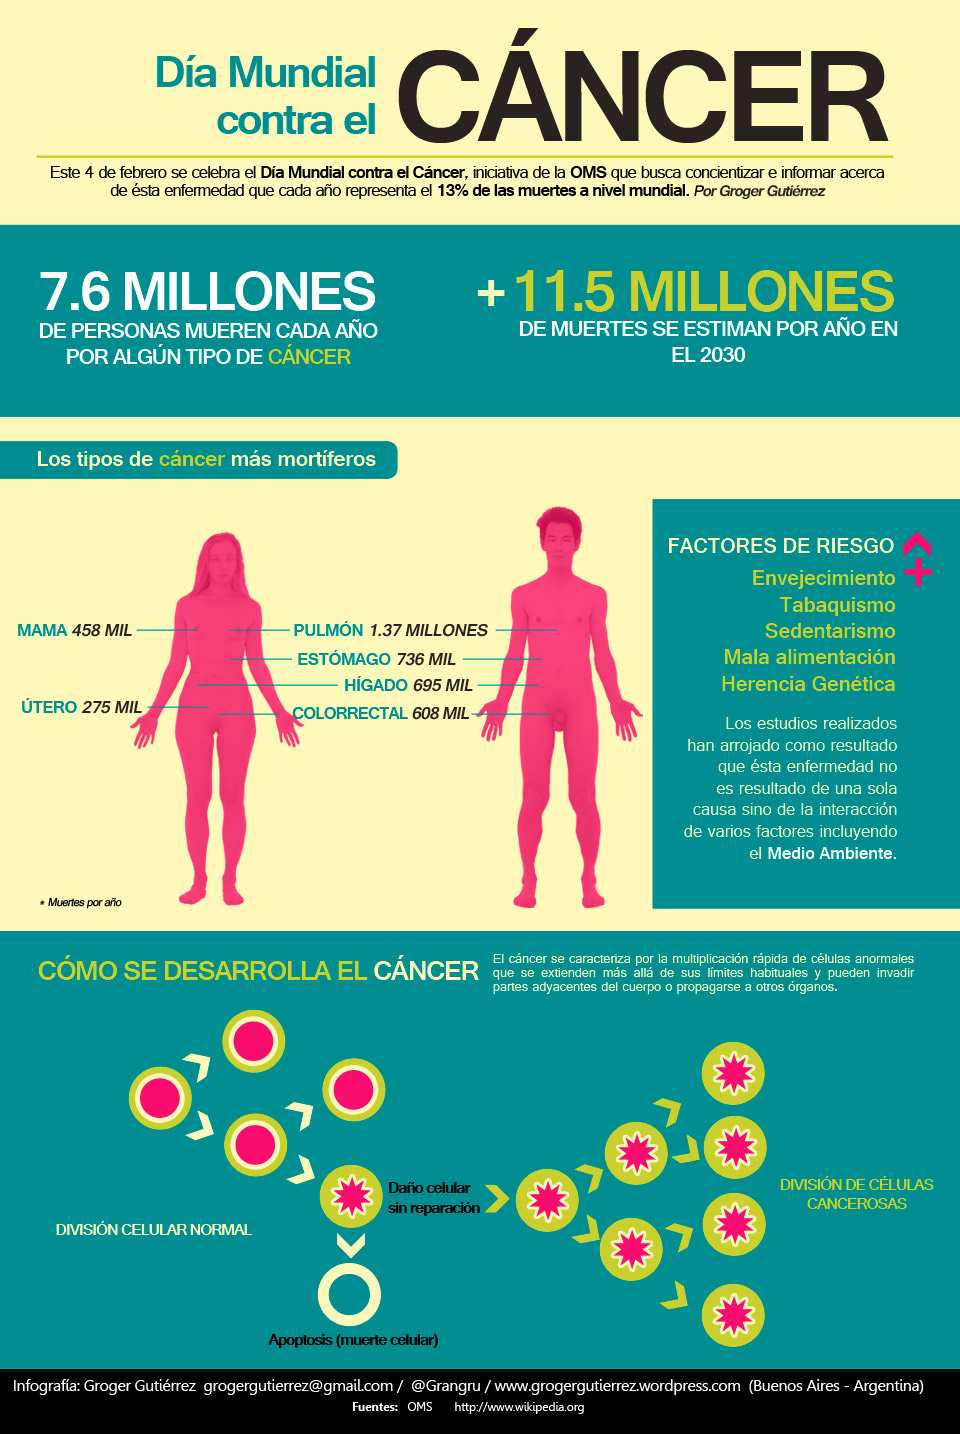 http://grogergutierrez.files.wordpress.com/2012/02/infografia_cancer1.jpg